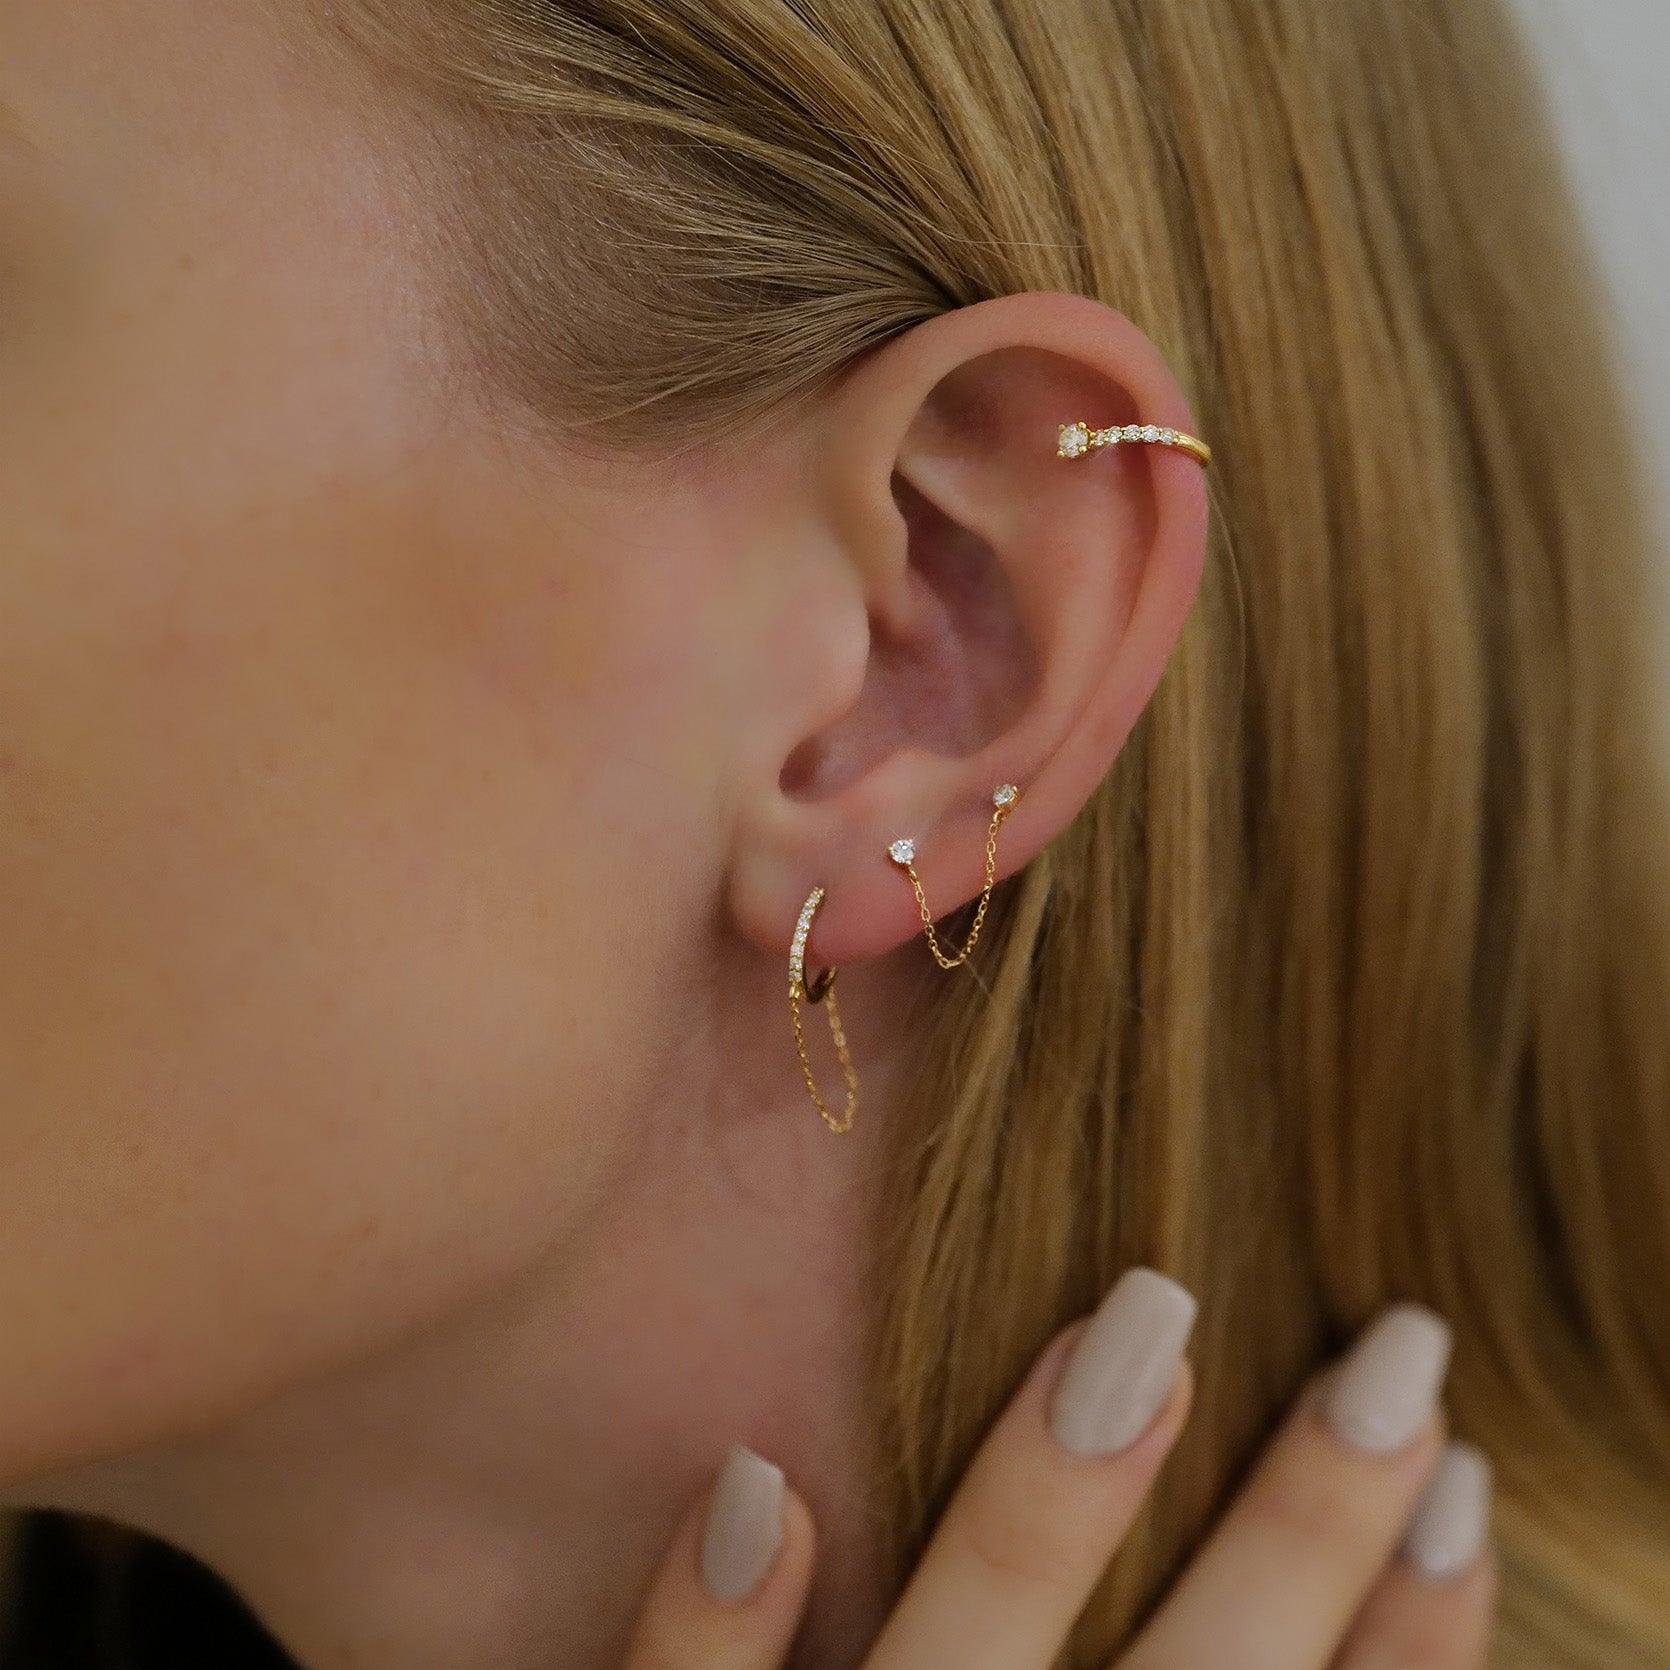 double ear piercing earring ideasTikTok Search